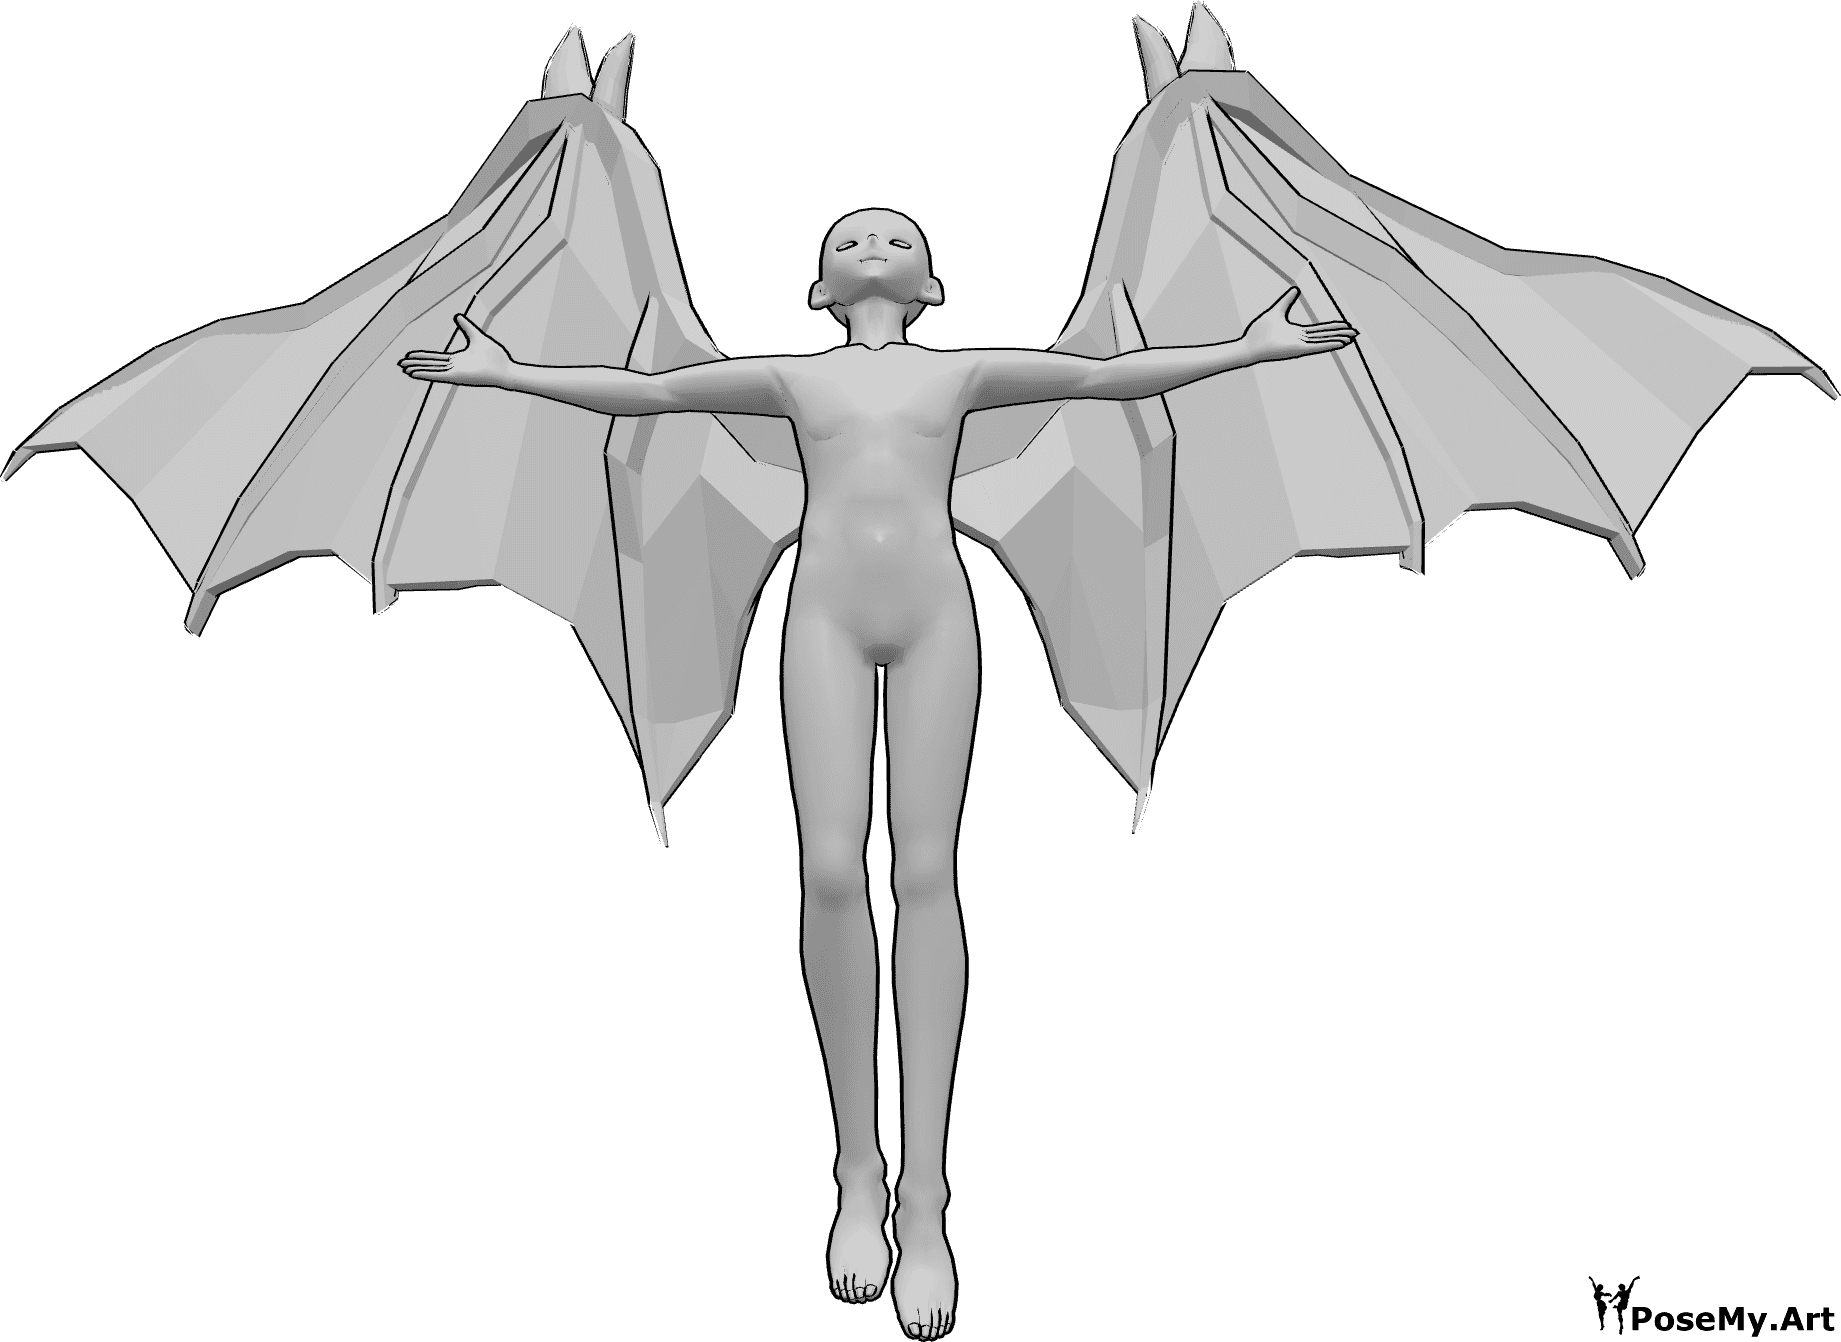 Referência de poses- Pose de voo do diabo de anime - Homem anime com asas de diabo está a voar, olhando para cima e levantando as mãos